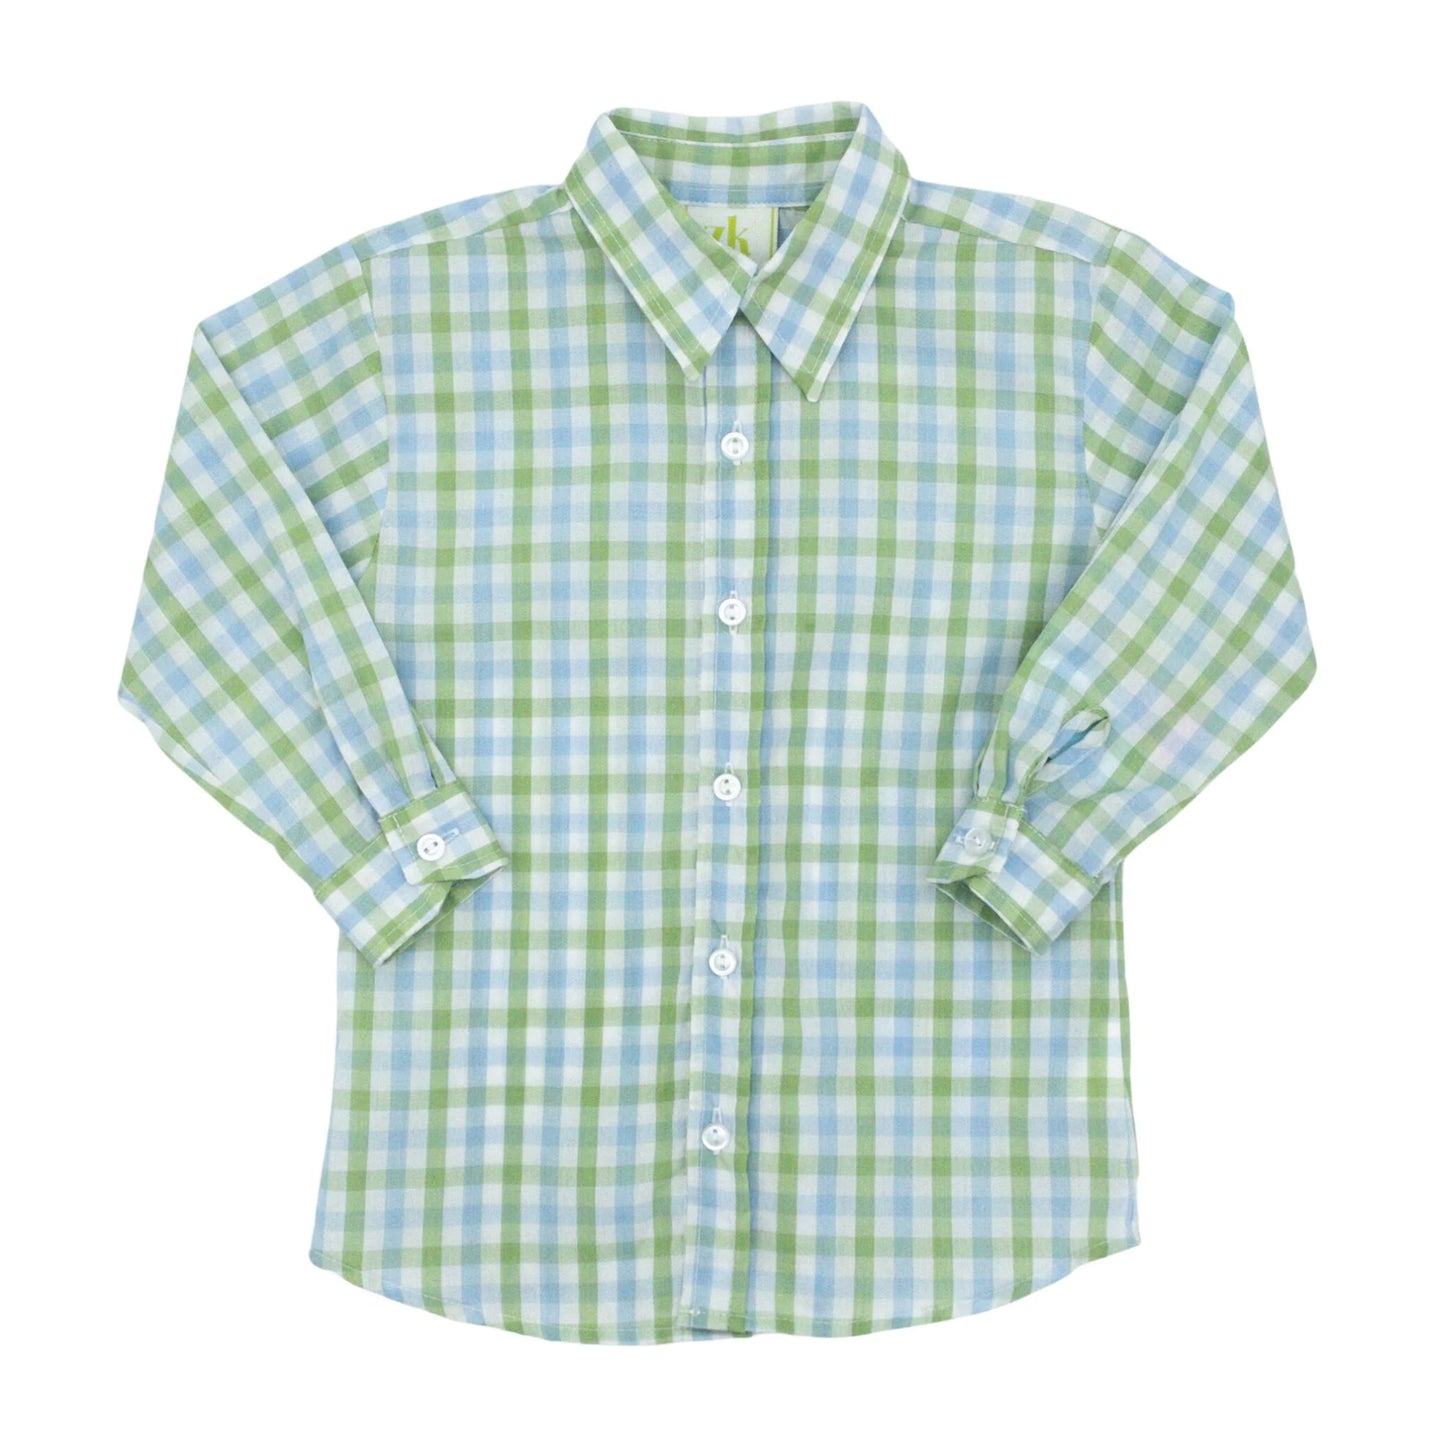 Bluegrass Alton Polo Shirt